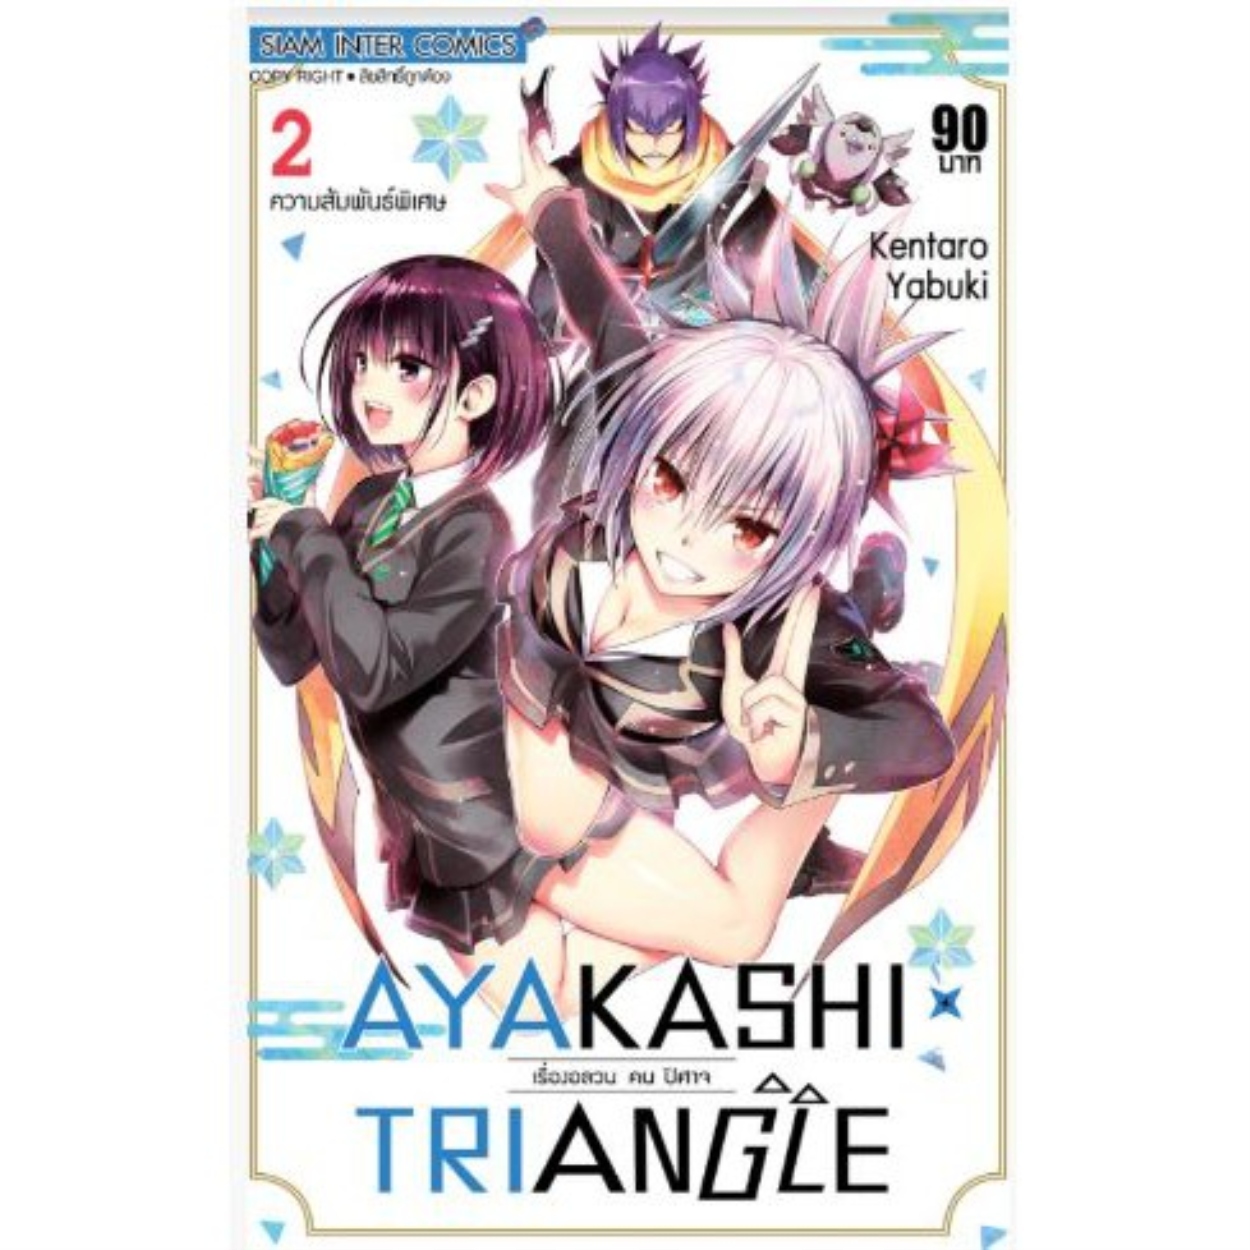 AYAKASHI TRIANGLE เรื่องอลวน คน ปิศาจ เล่ม 1 - 2 ( หนังสือการ์ตูน มือหนึ่ง) by unotoon